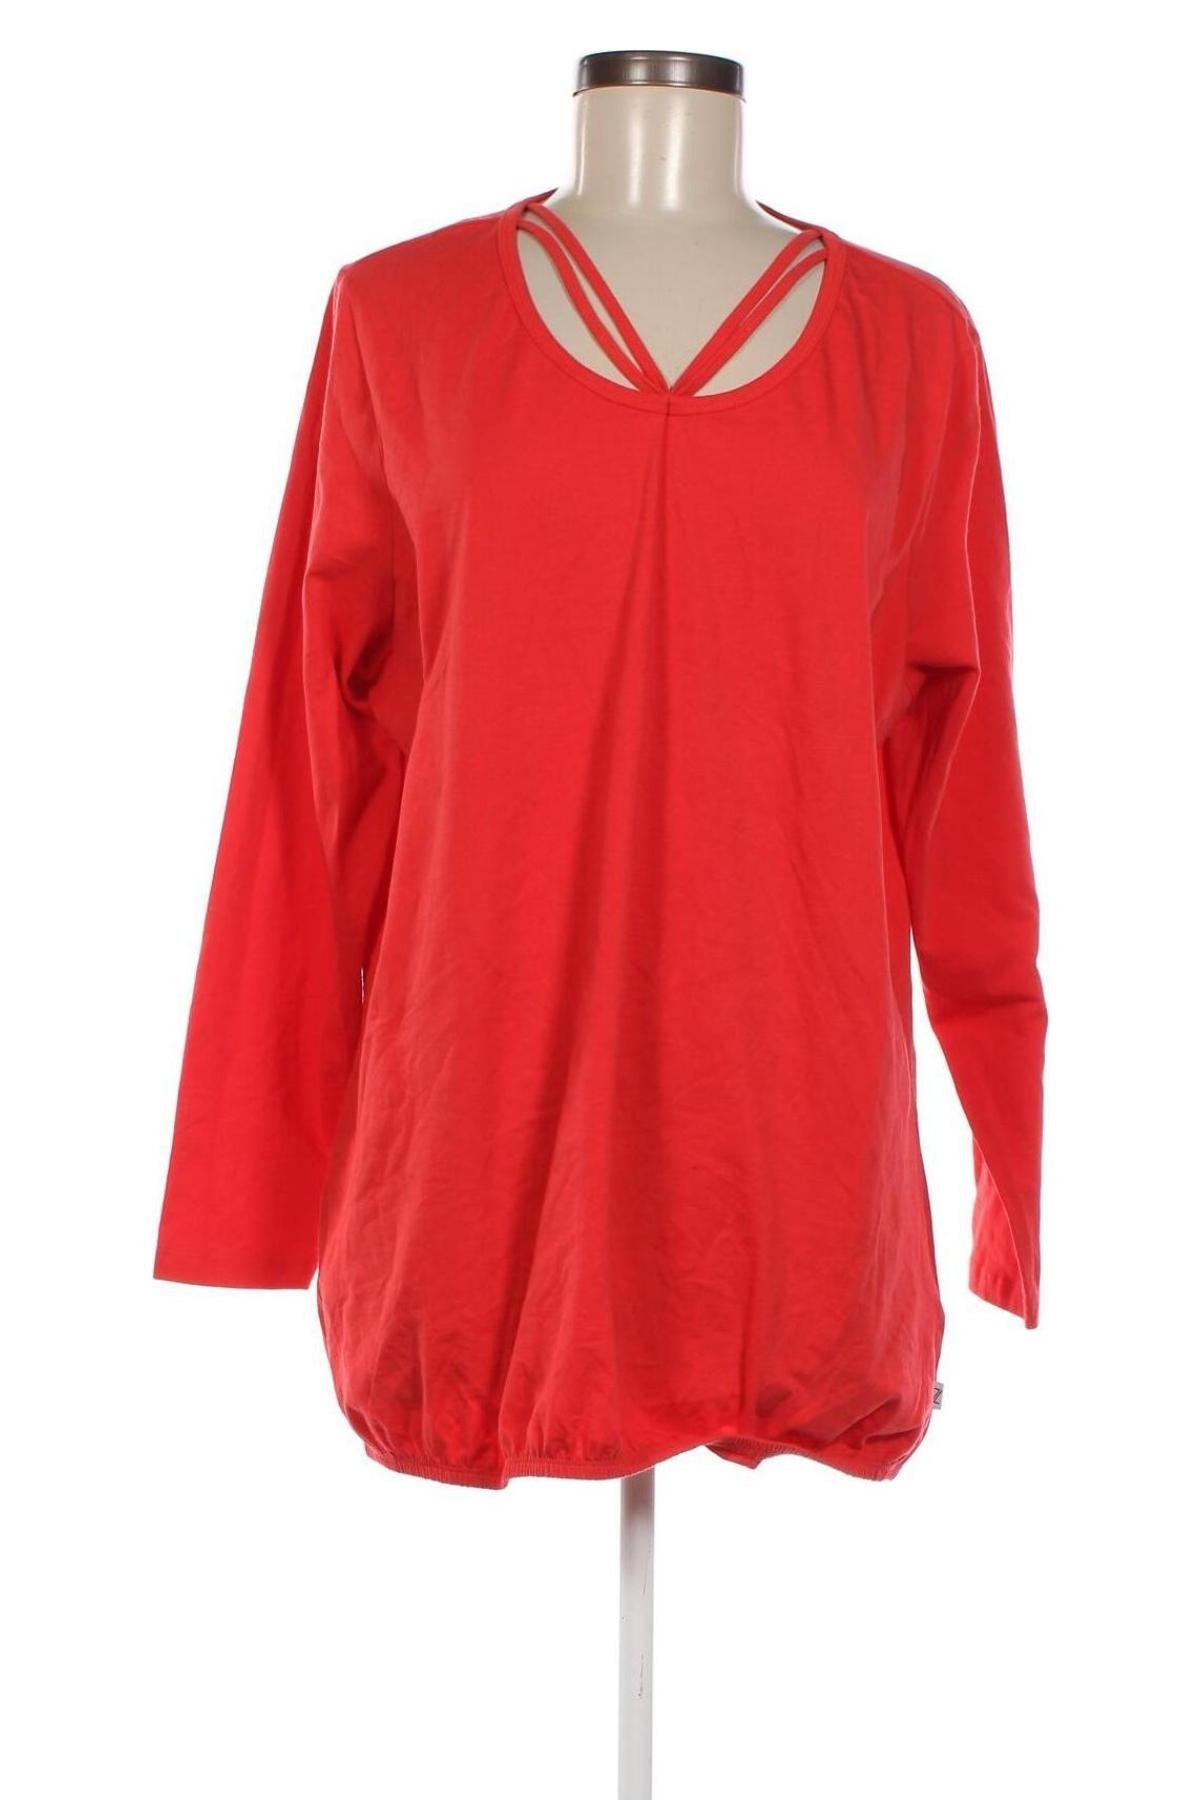 Дамска блуза Zhenzi, Размер M, Цвят Червен, Цена 19,00 лв.